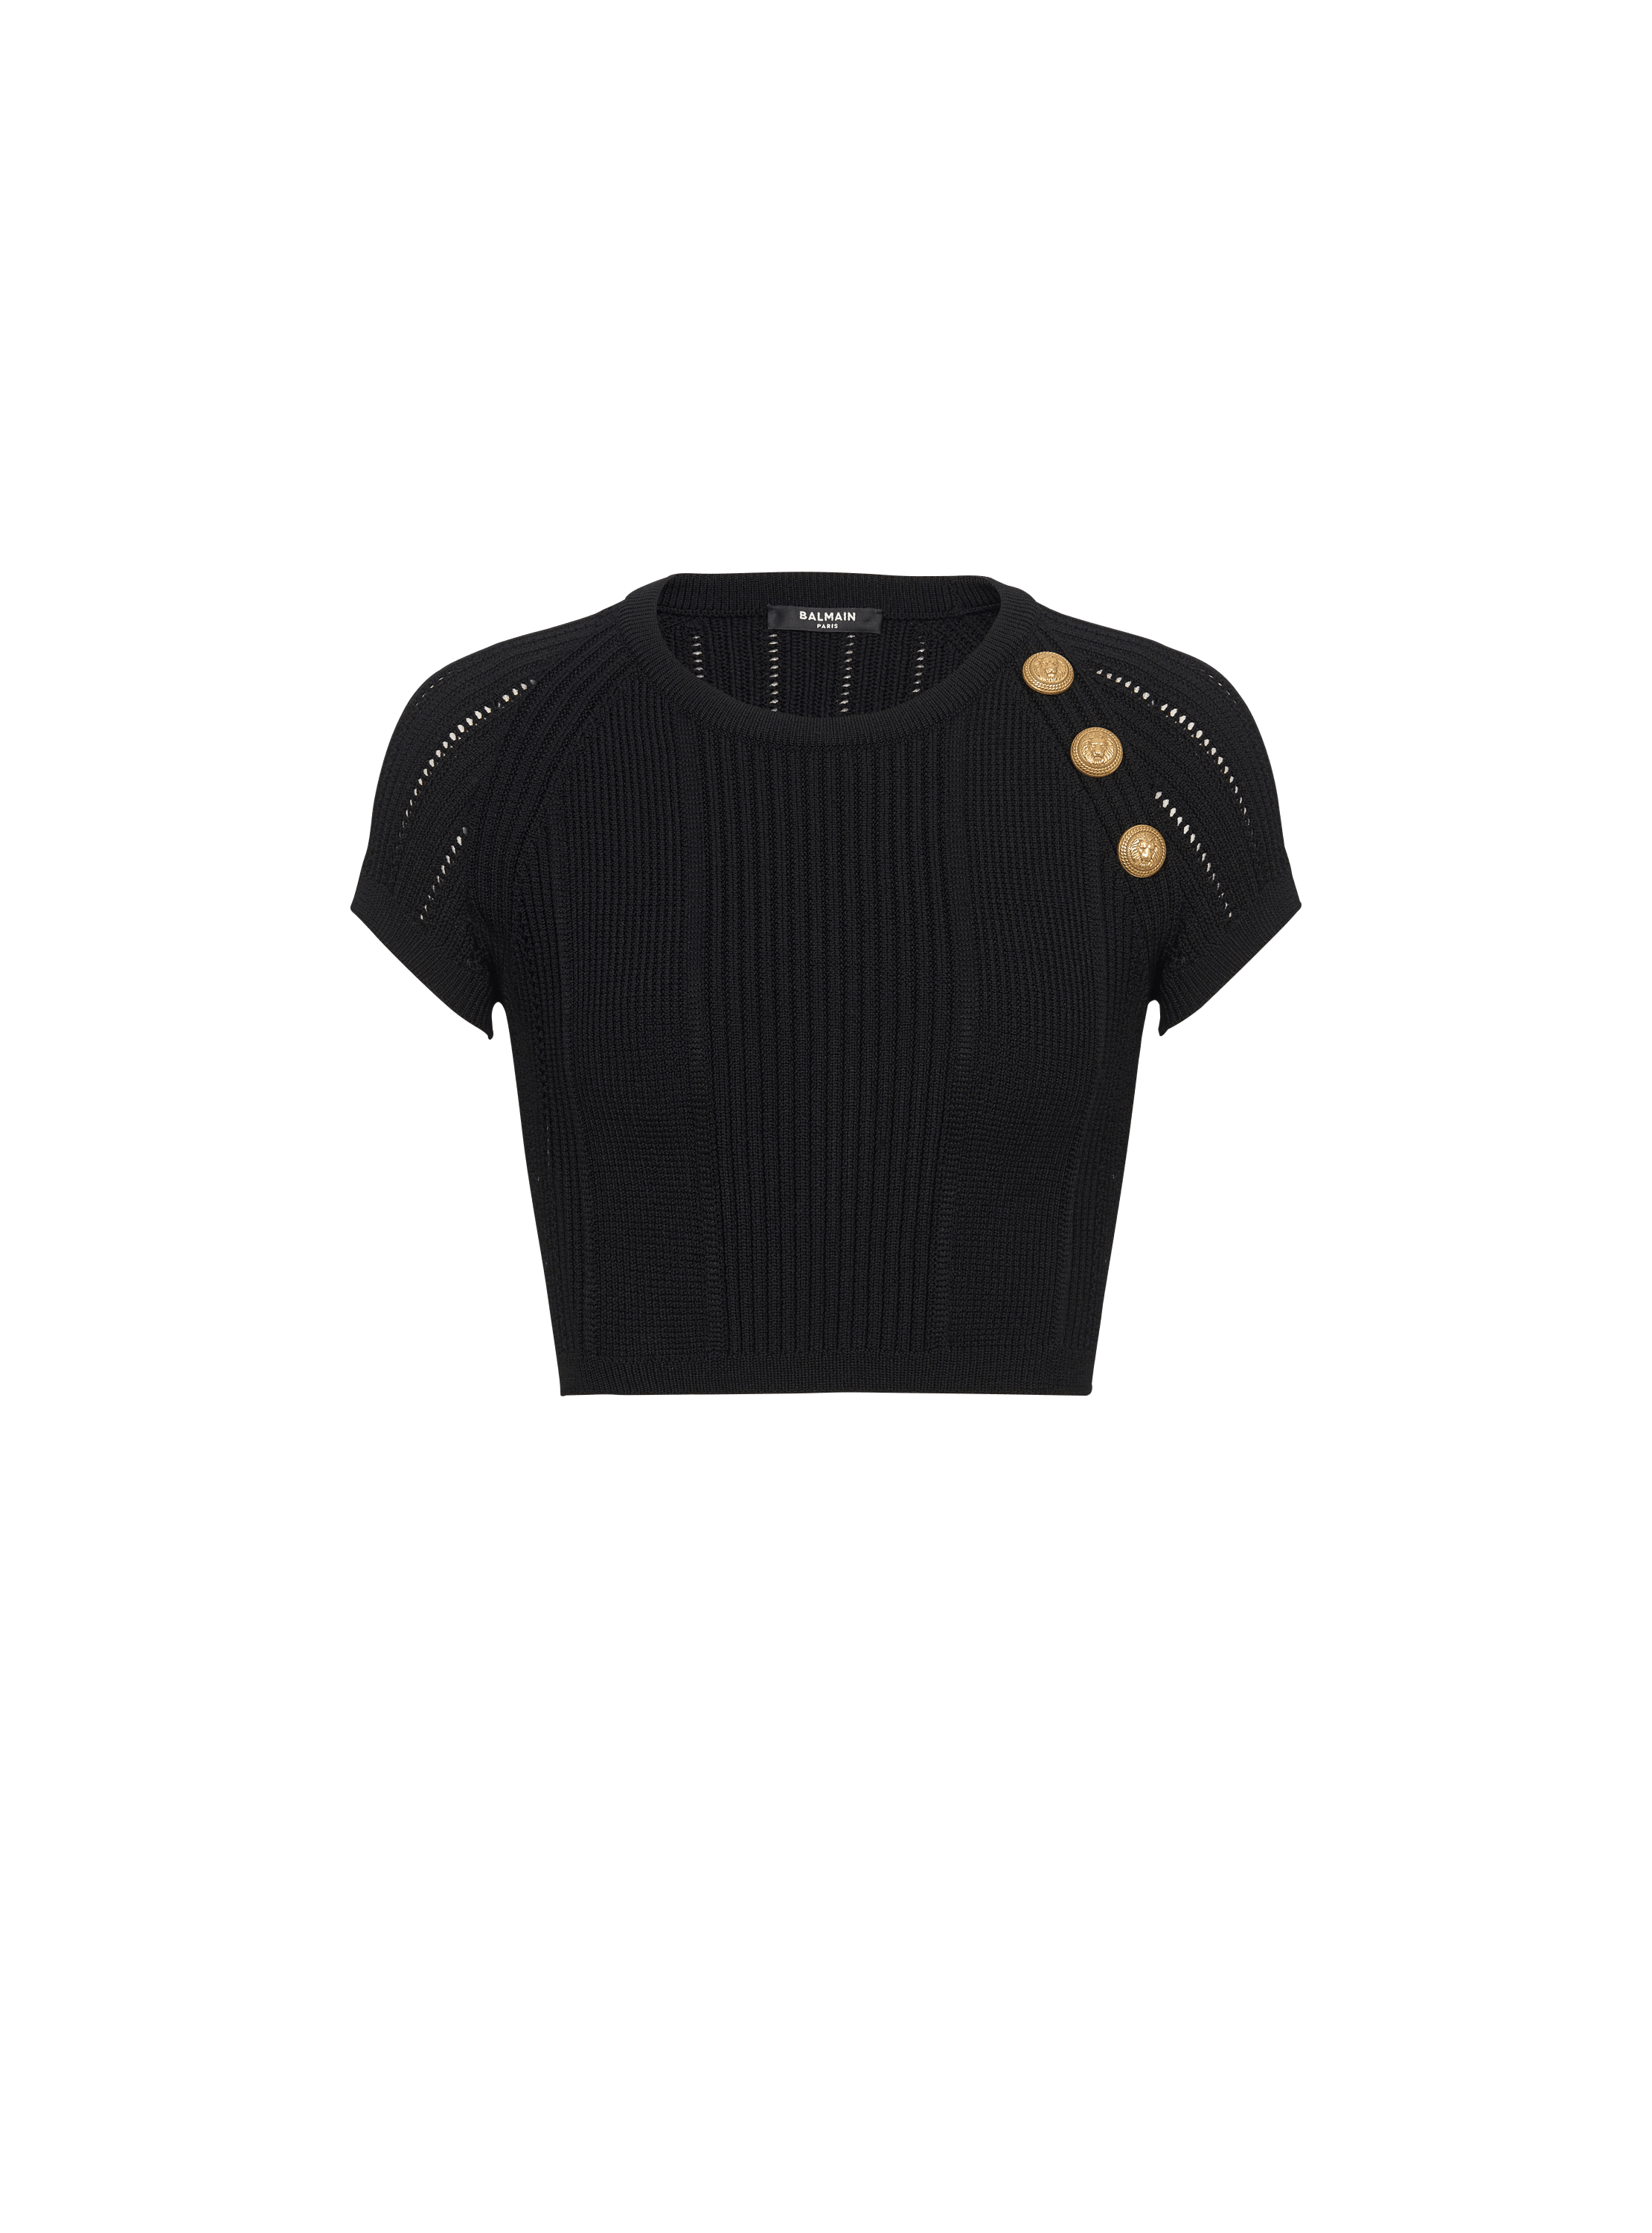 3-button fine knit top, black, hi-res